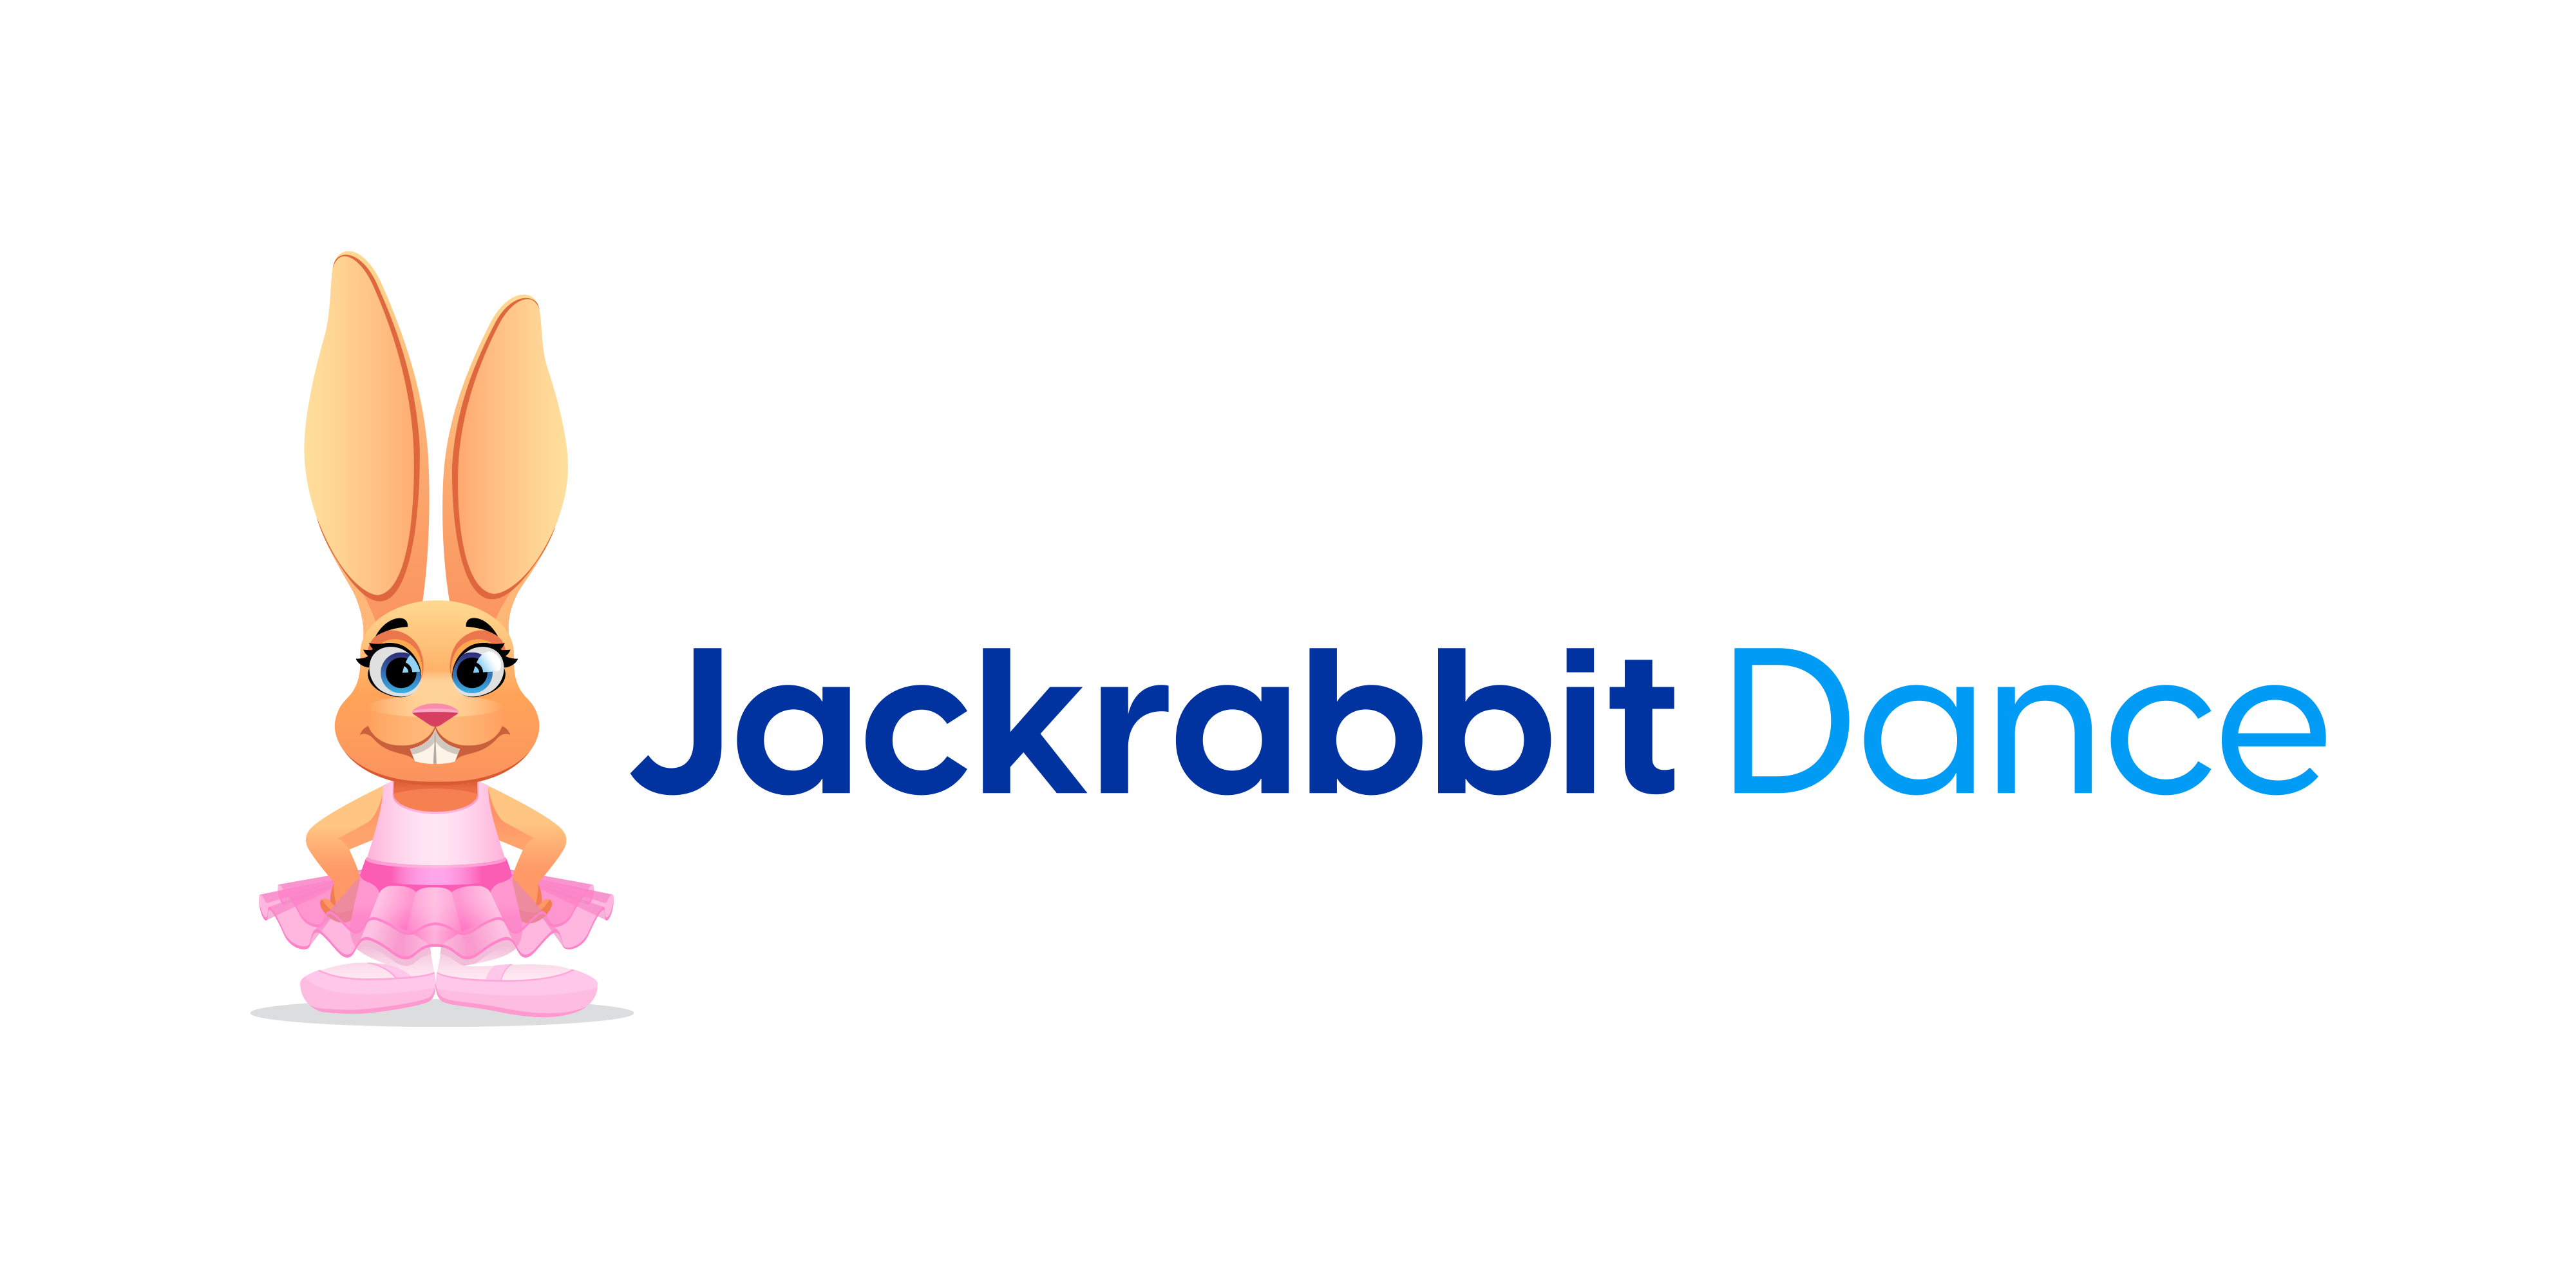 Jackrabbit Dance logo bunny + wordmark